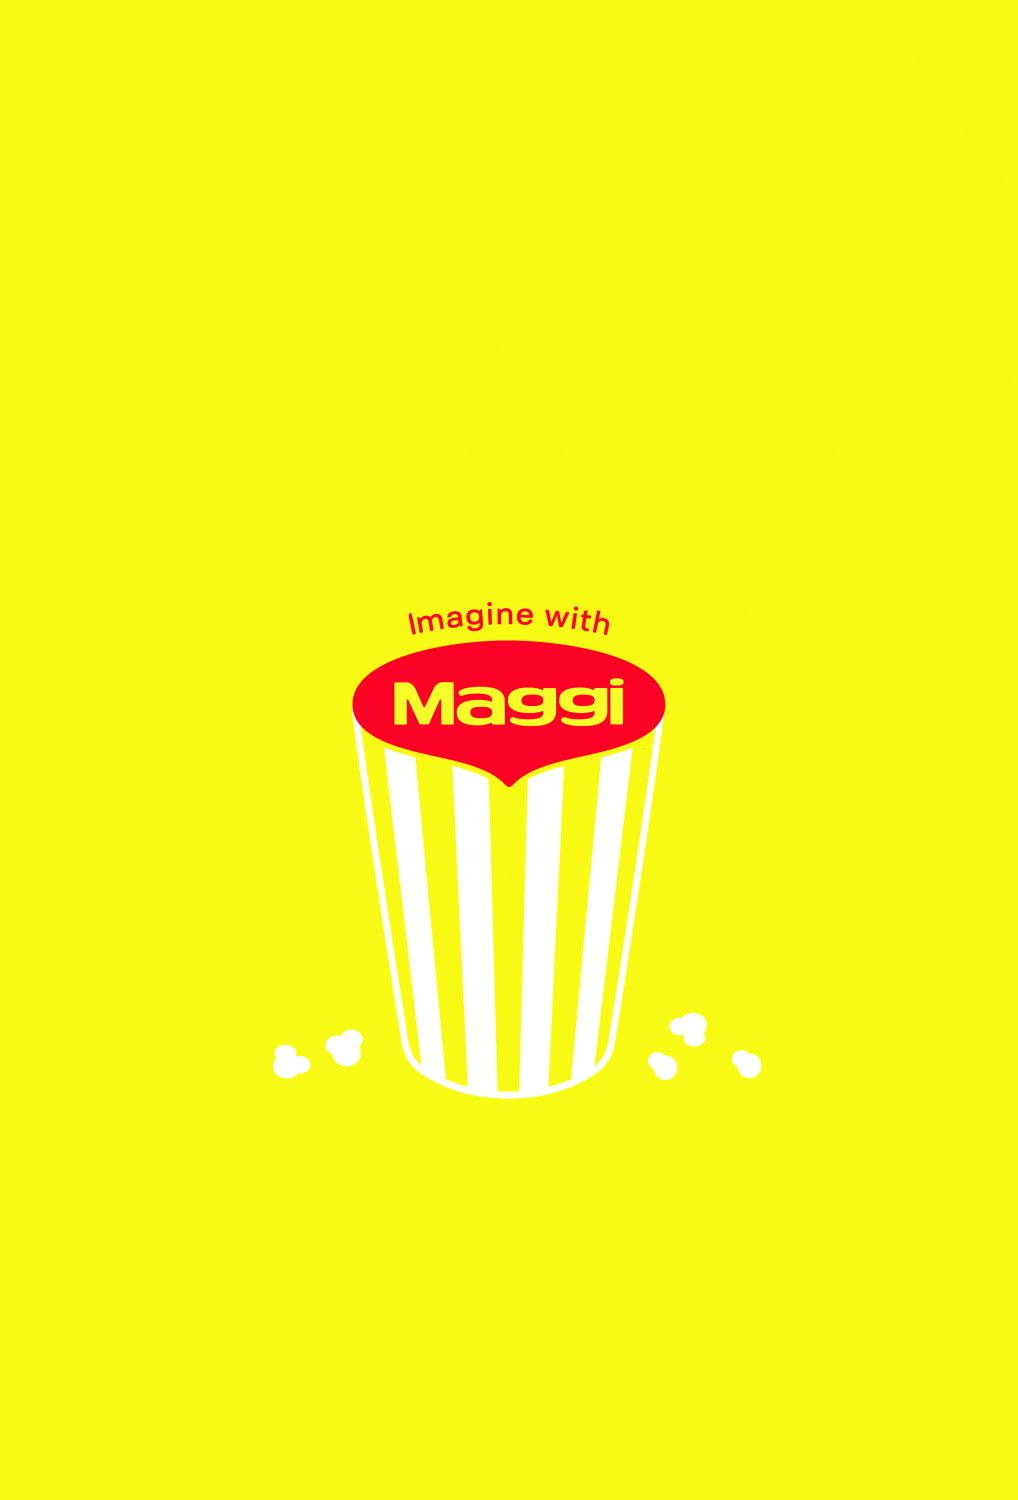 2021-Nestle Maggi-Imagine With Maggi-Poster 04-Publicis Brazil–jpg